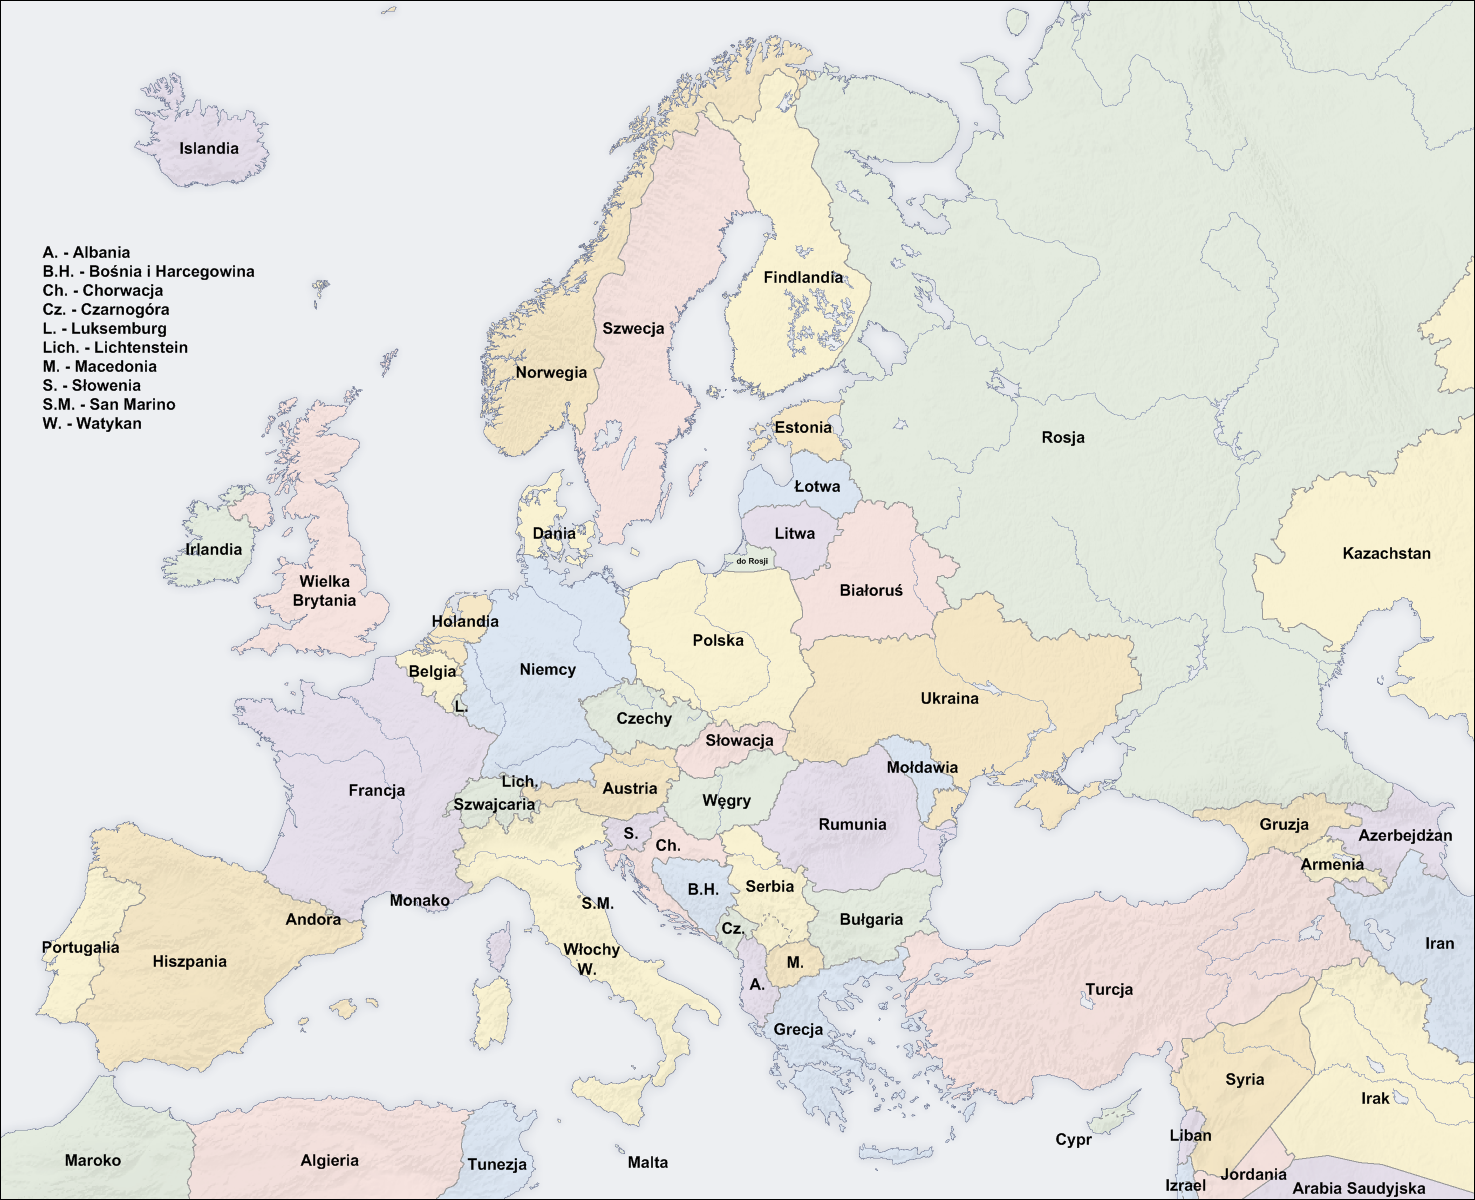 Mapa Europy Państwa I Stolice Test Wypisz wszystkie stolice podane na zdjęciu. - Sciaga.pl